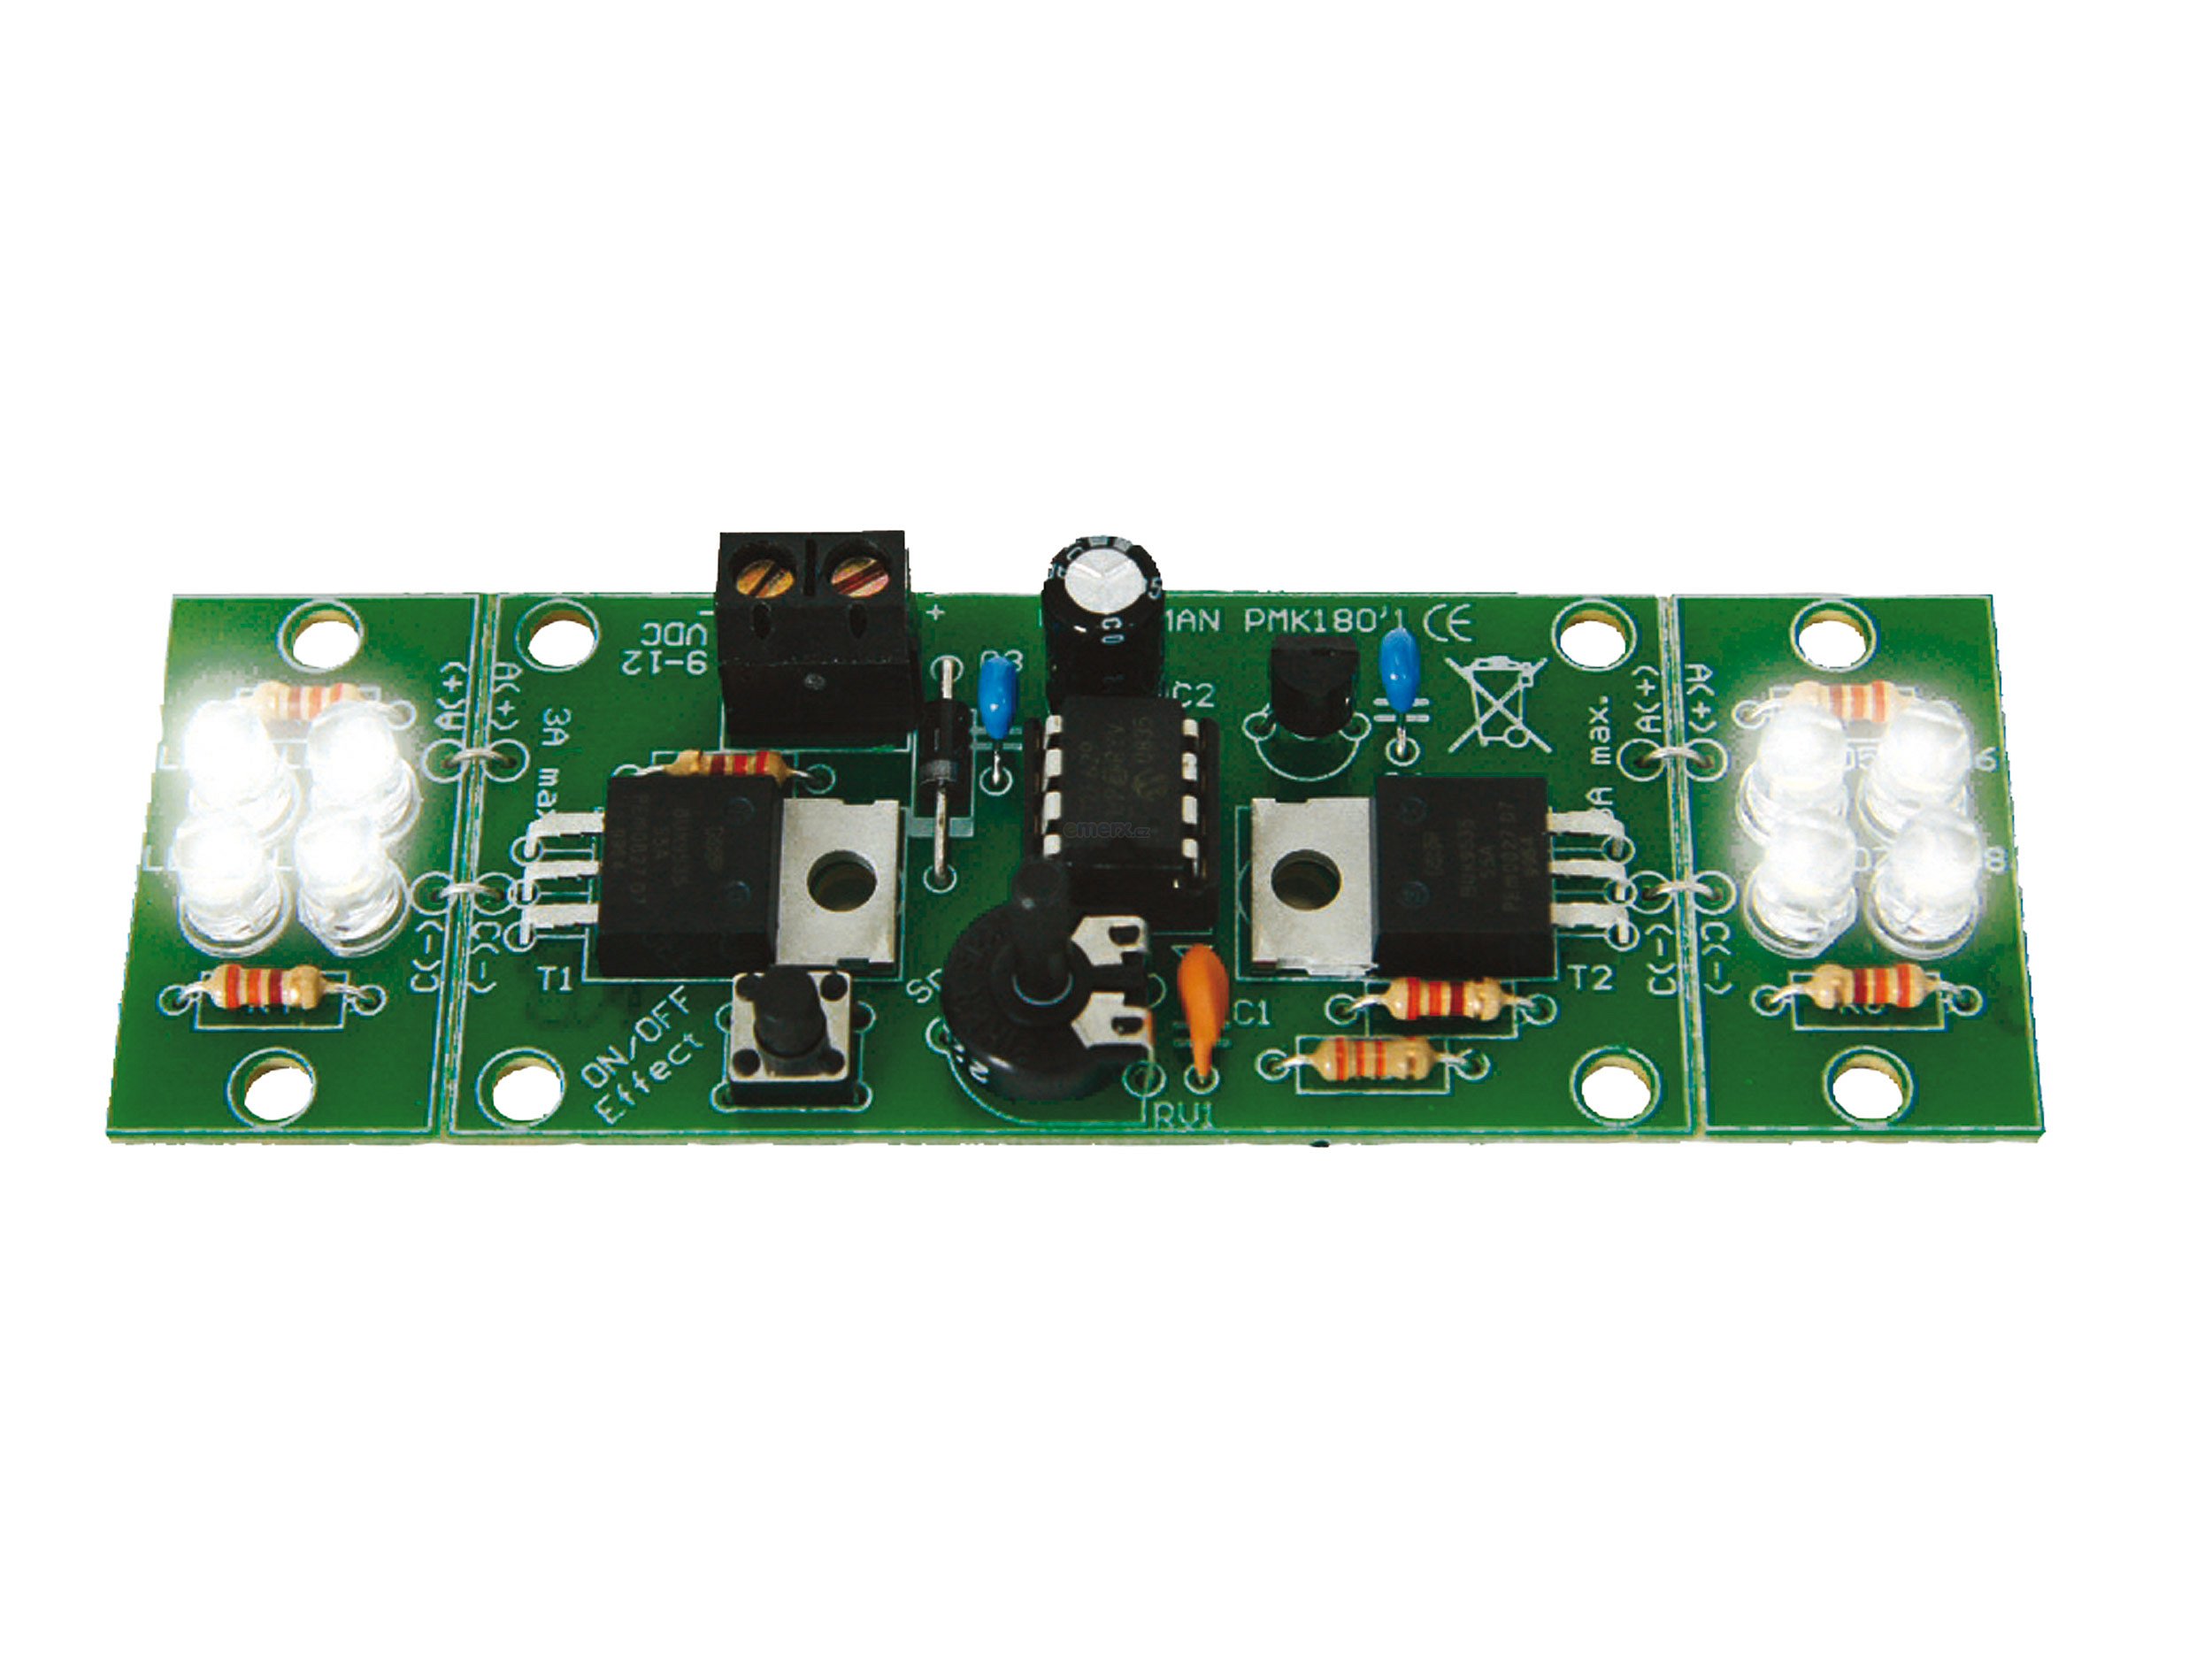 Stavebnice - Výkonný 2-kanálový LED blikač MK180 (MK180)